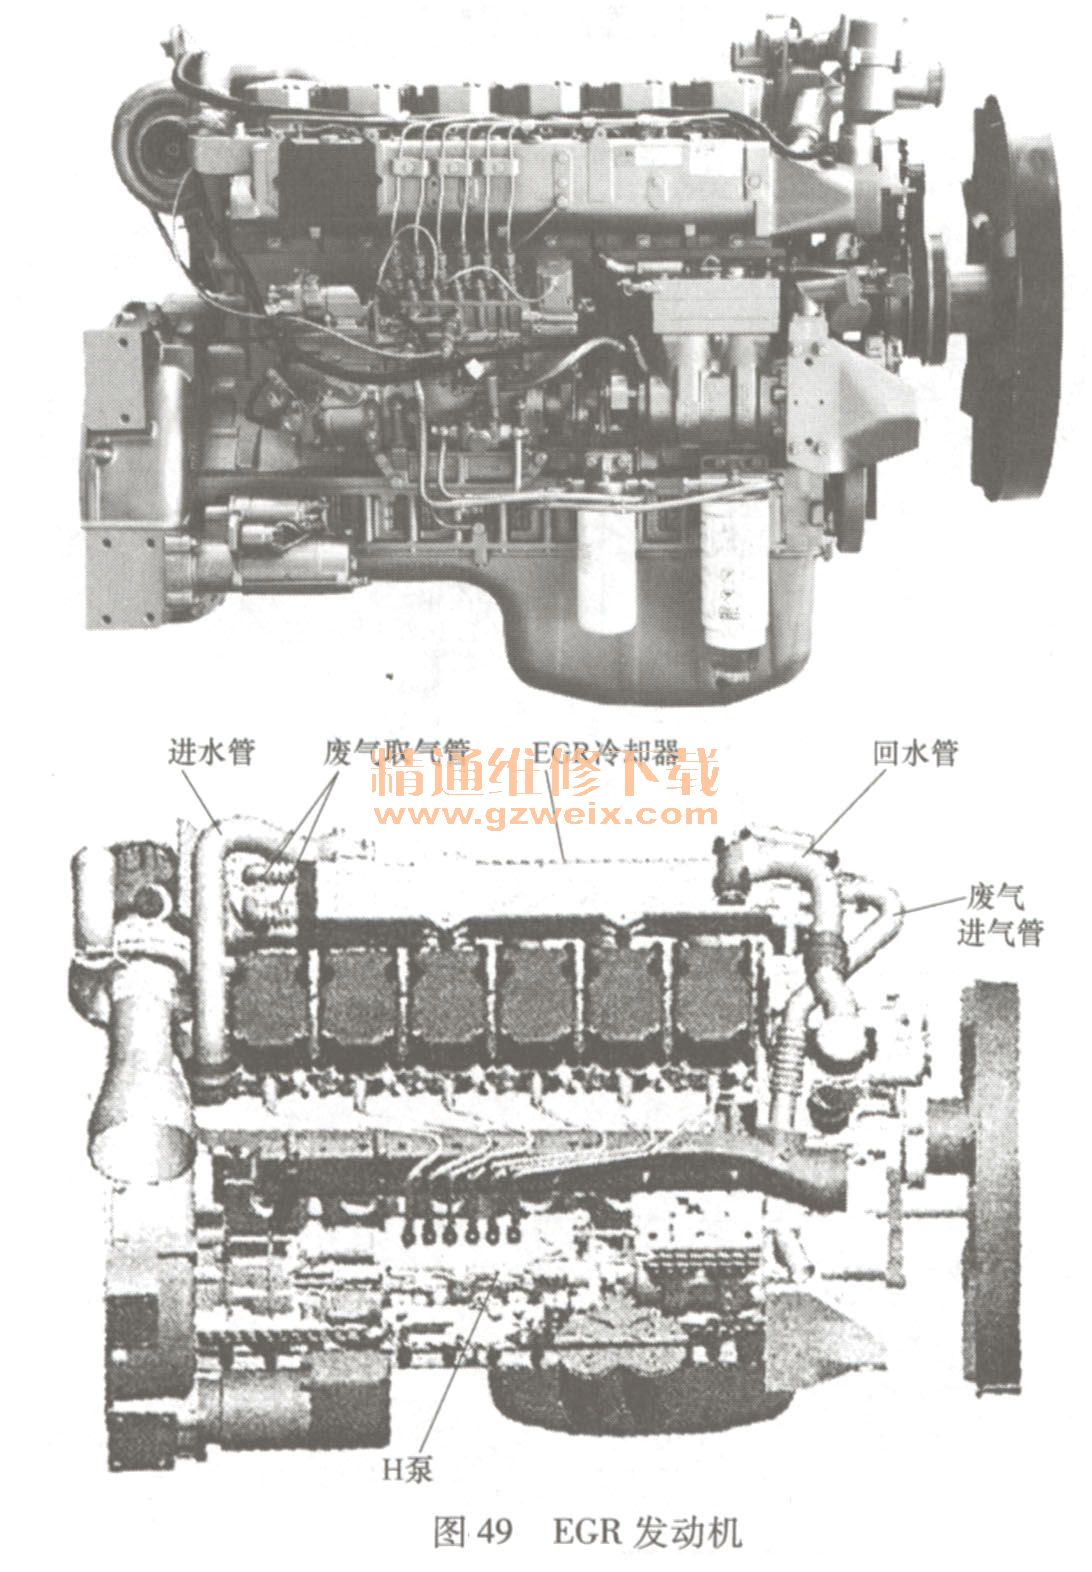 潍柴wd615(国iii )egr发动机的结构